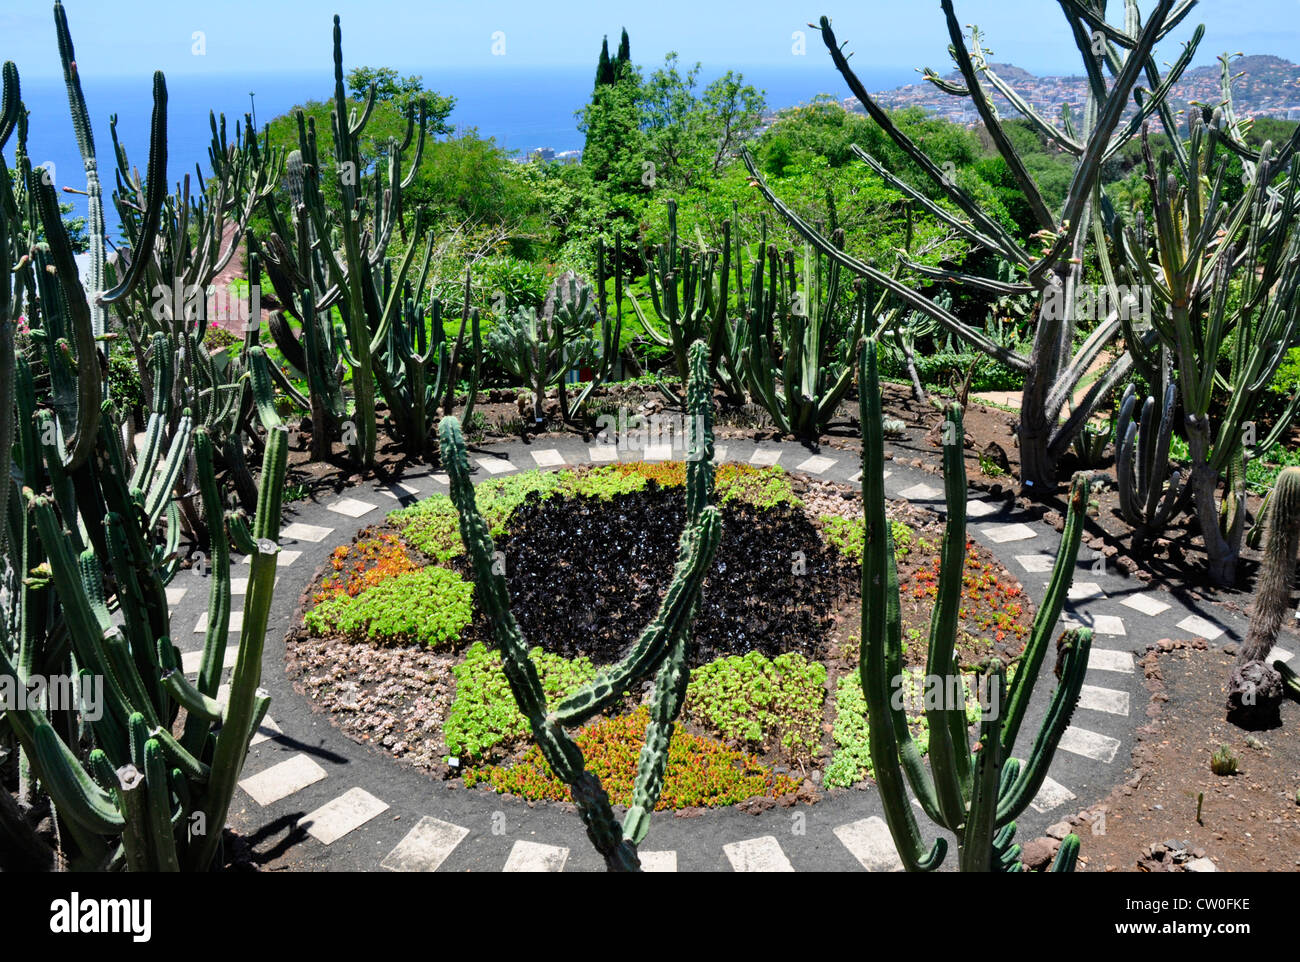 Portogallo - Madeira - Botanica Gdns - layout formale di piante grasse - cactus etc - sfondo blu del cielo e del mare - sole Foto Stock